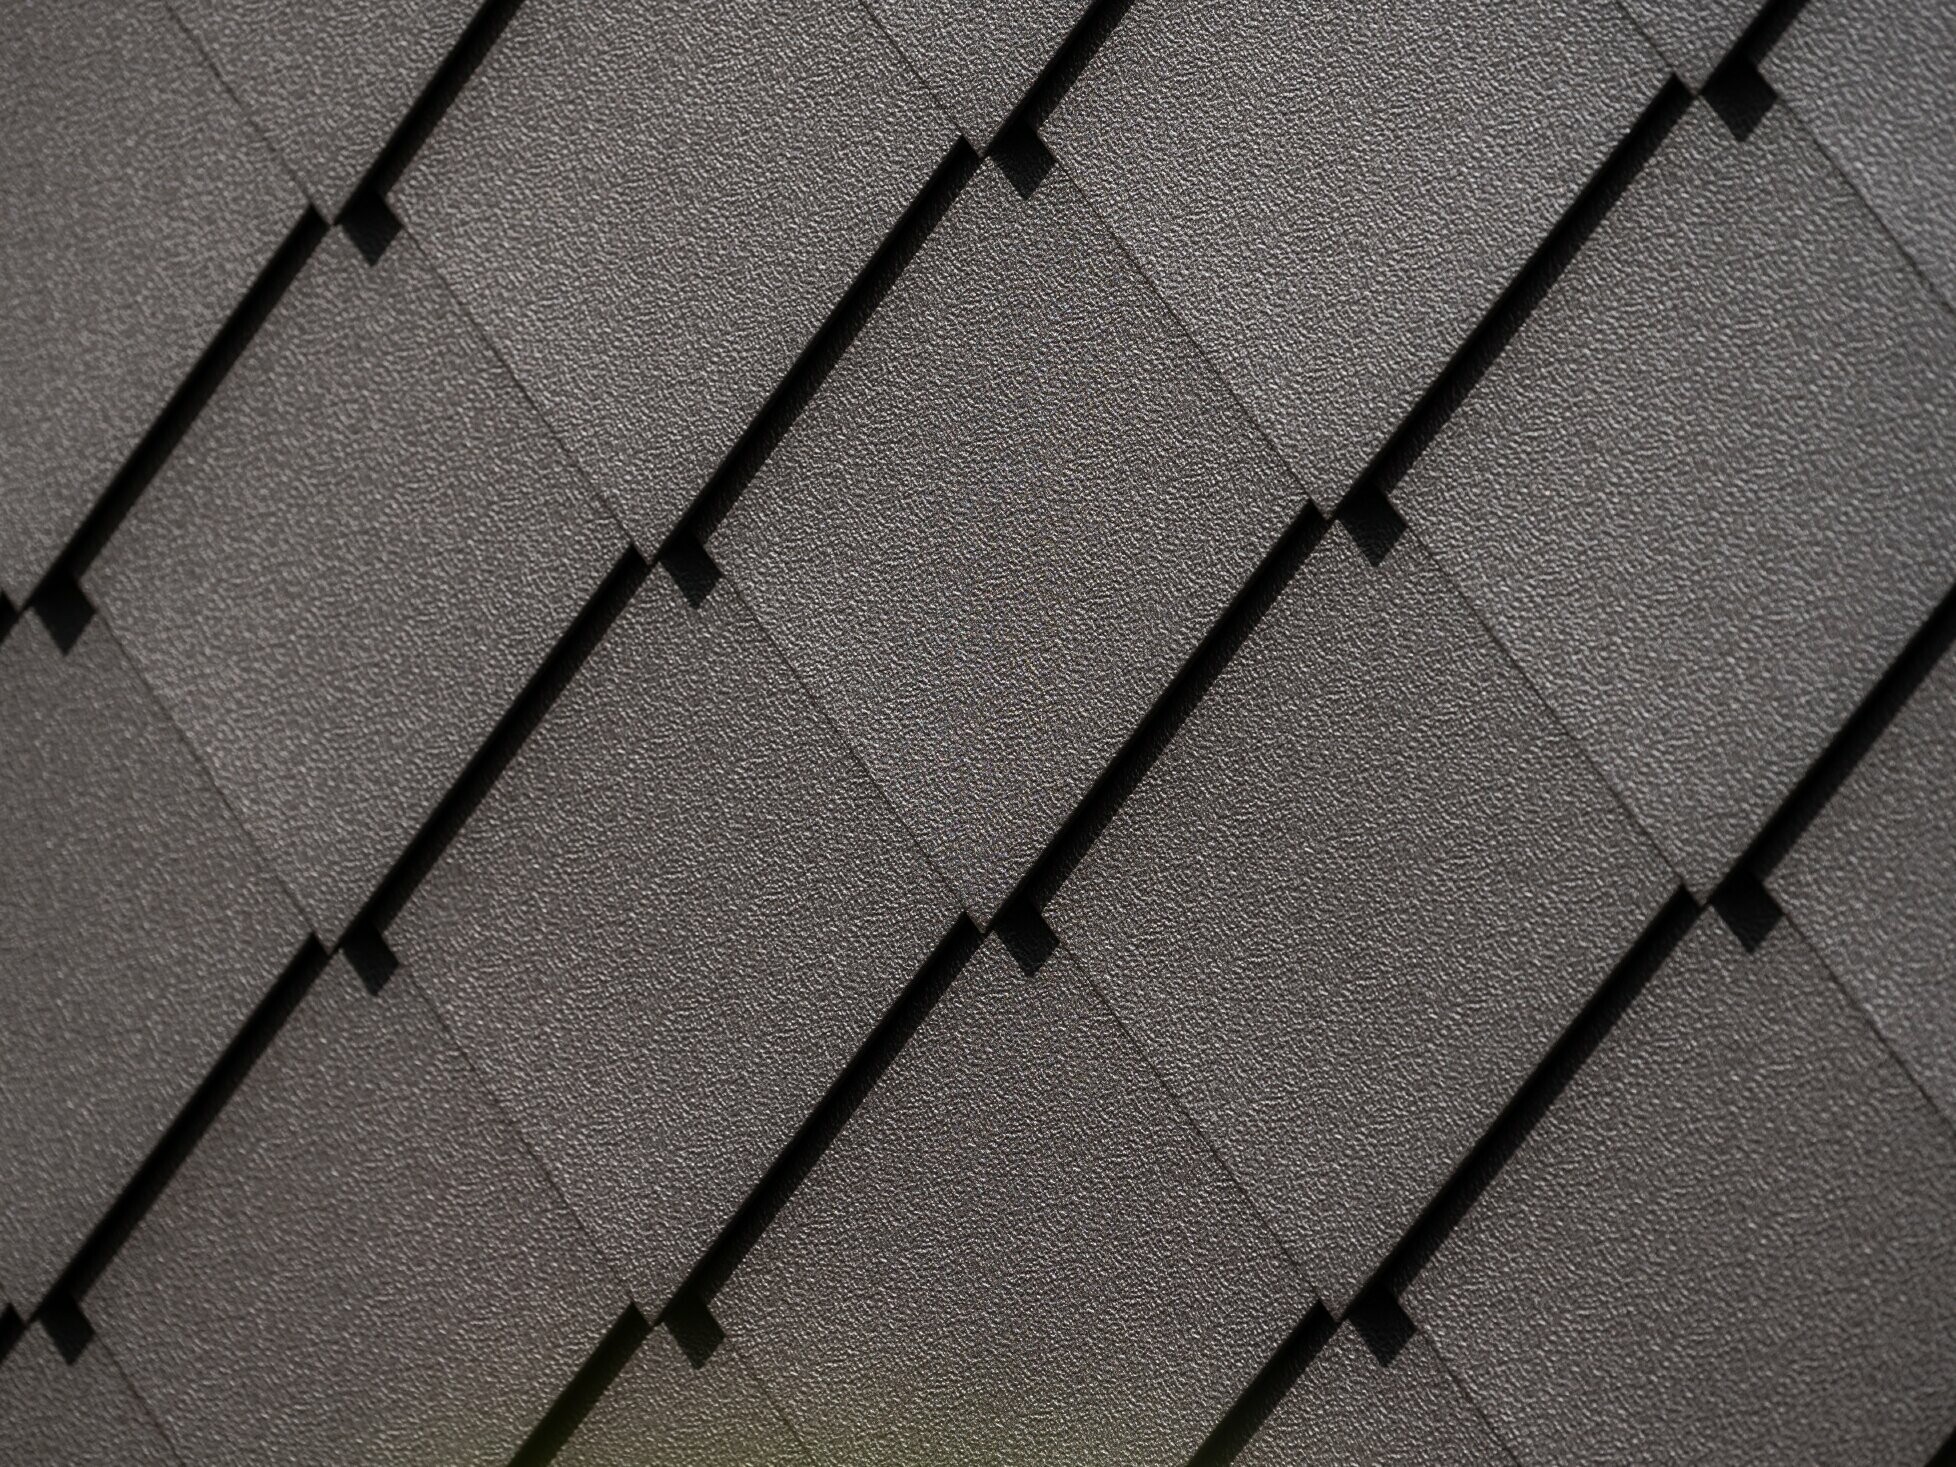 PREFA gevellosange 29 × 29 in hazelnootbruin, detailafbeelding met stucco-oppervlak